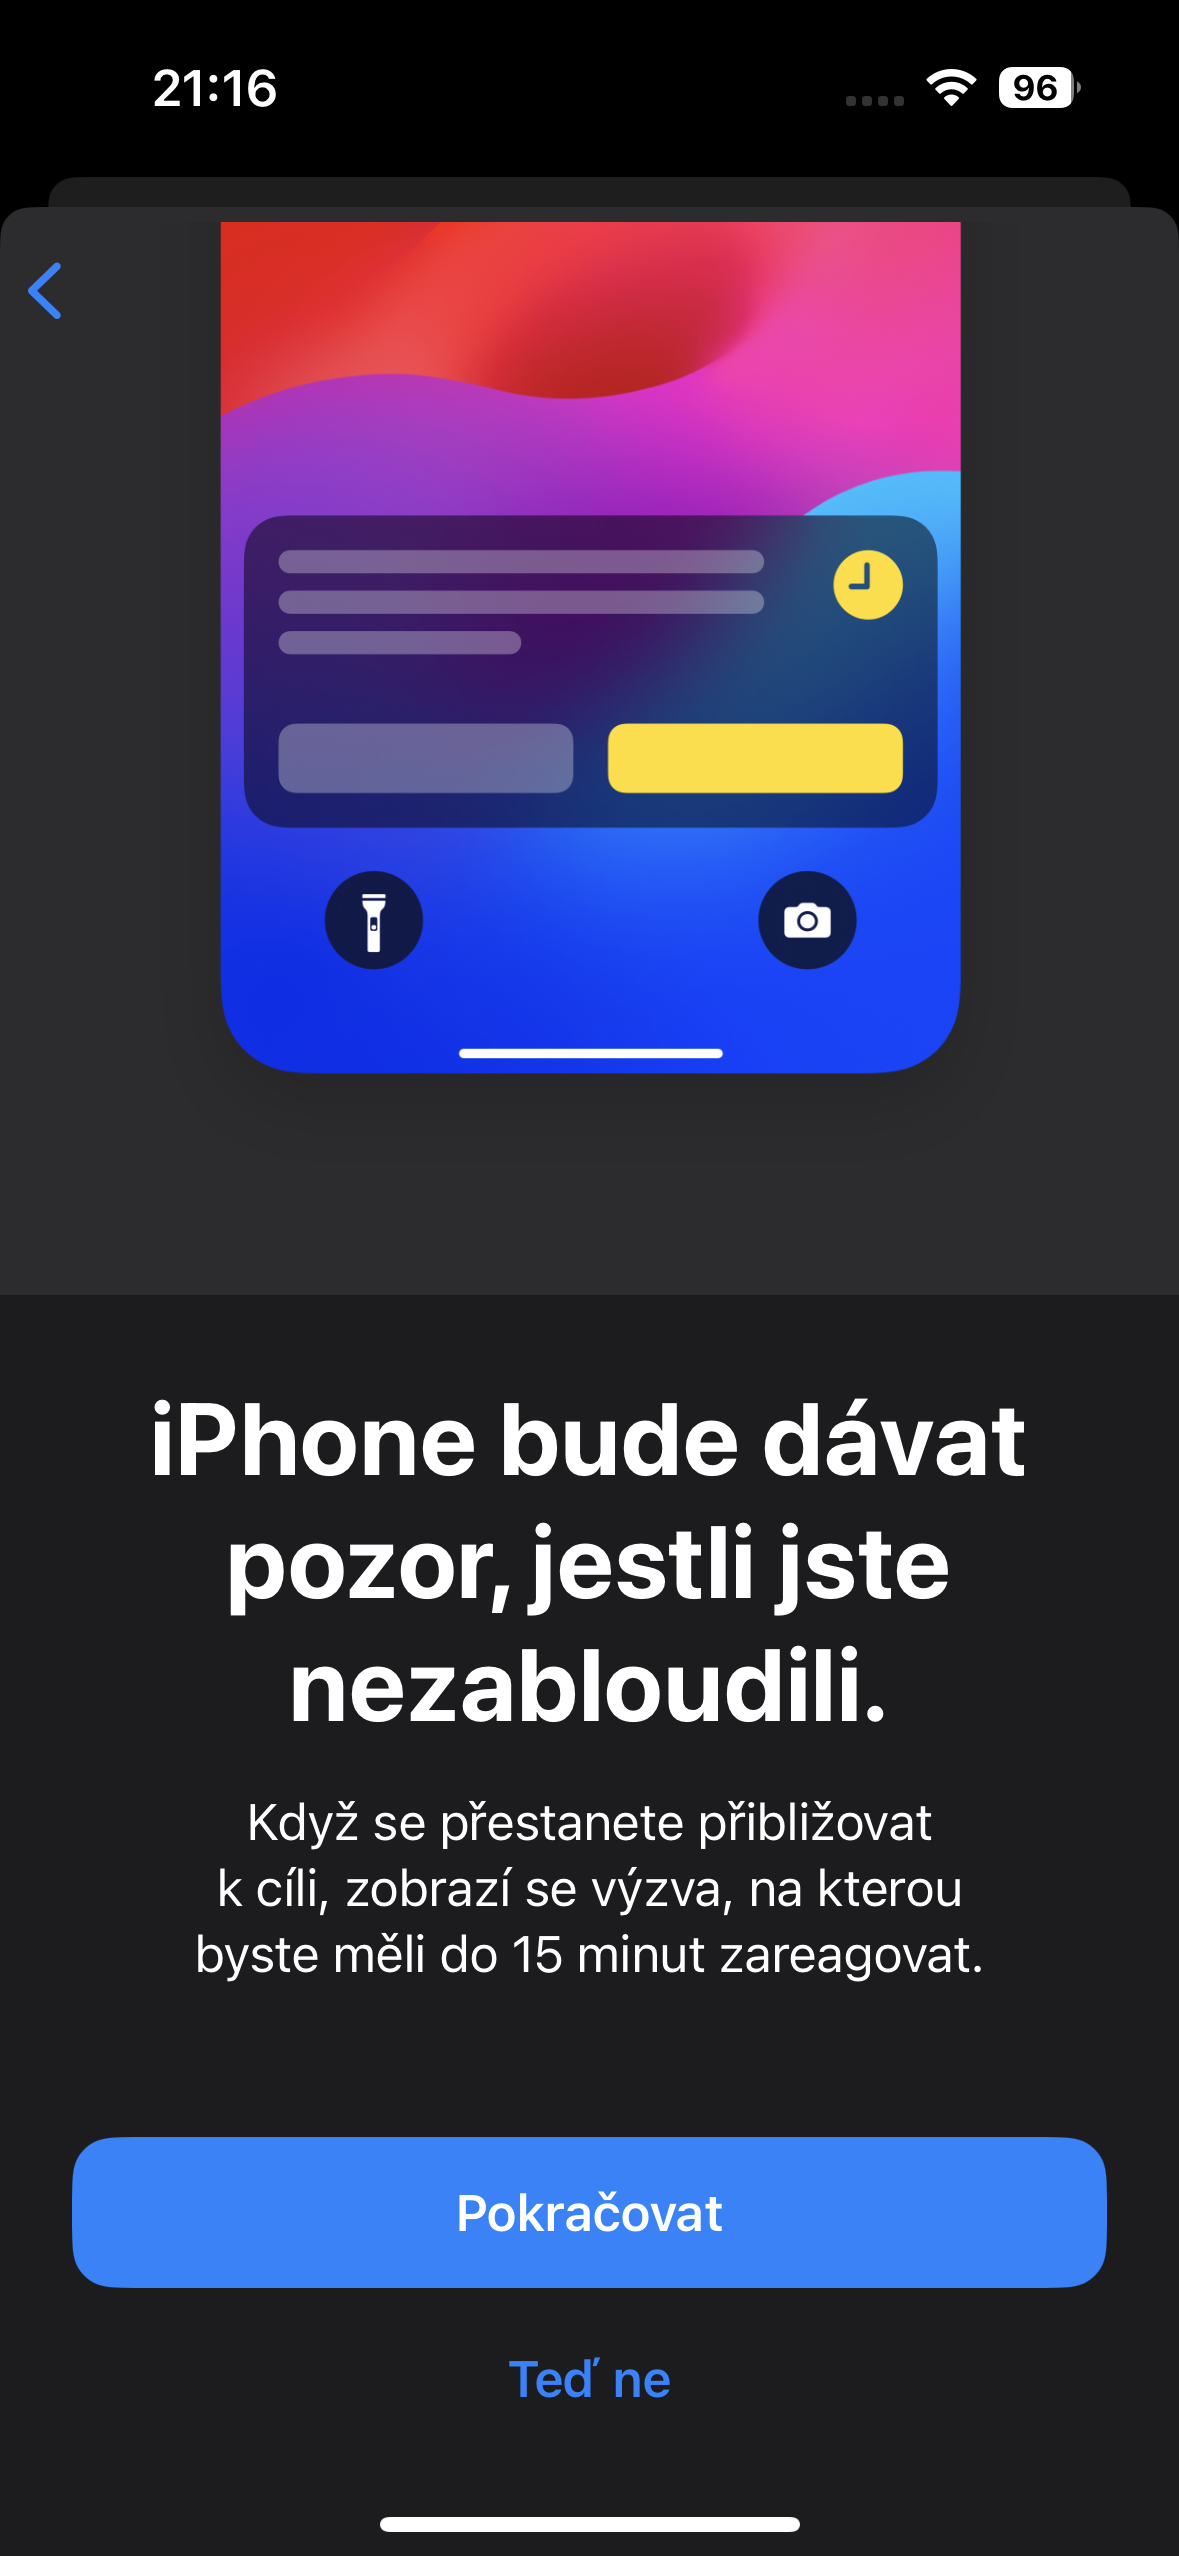 Doprovod mobilenet.cz radí